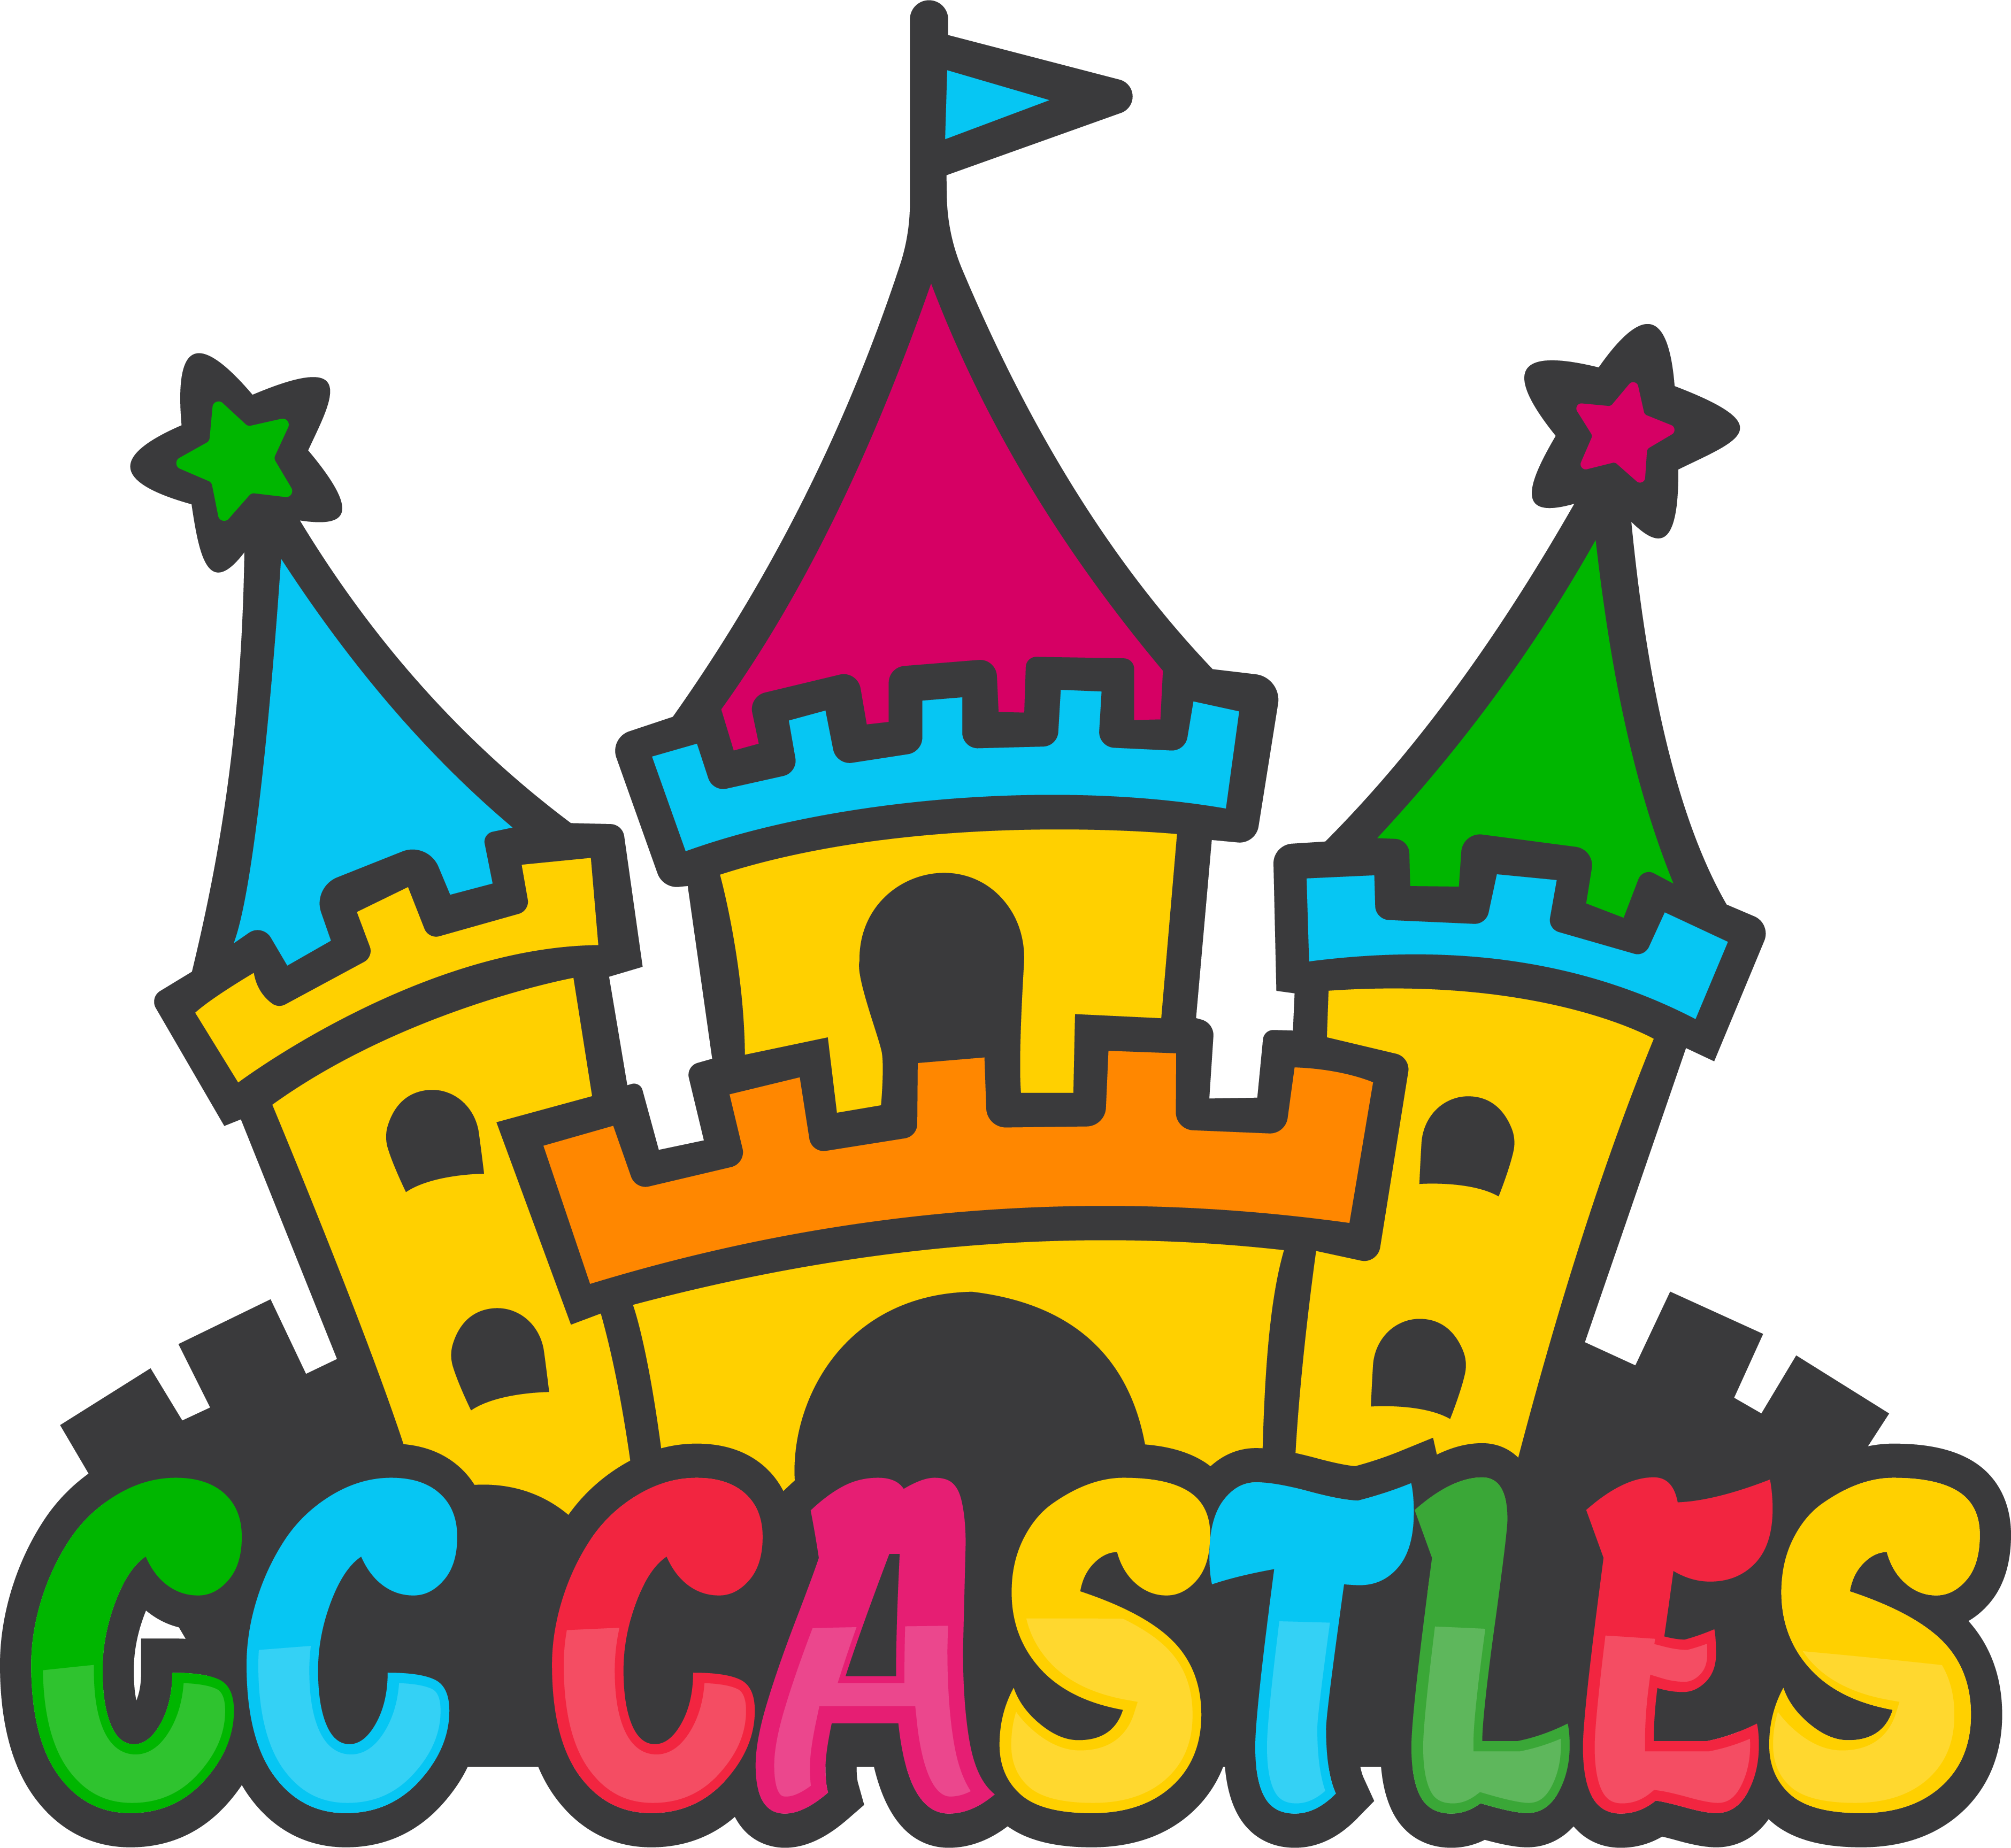 CC Castles